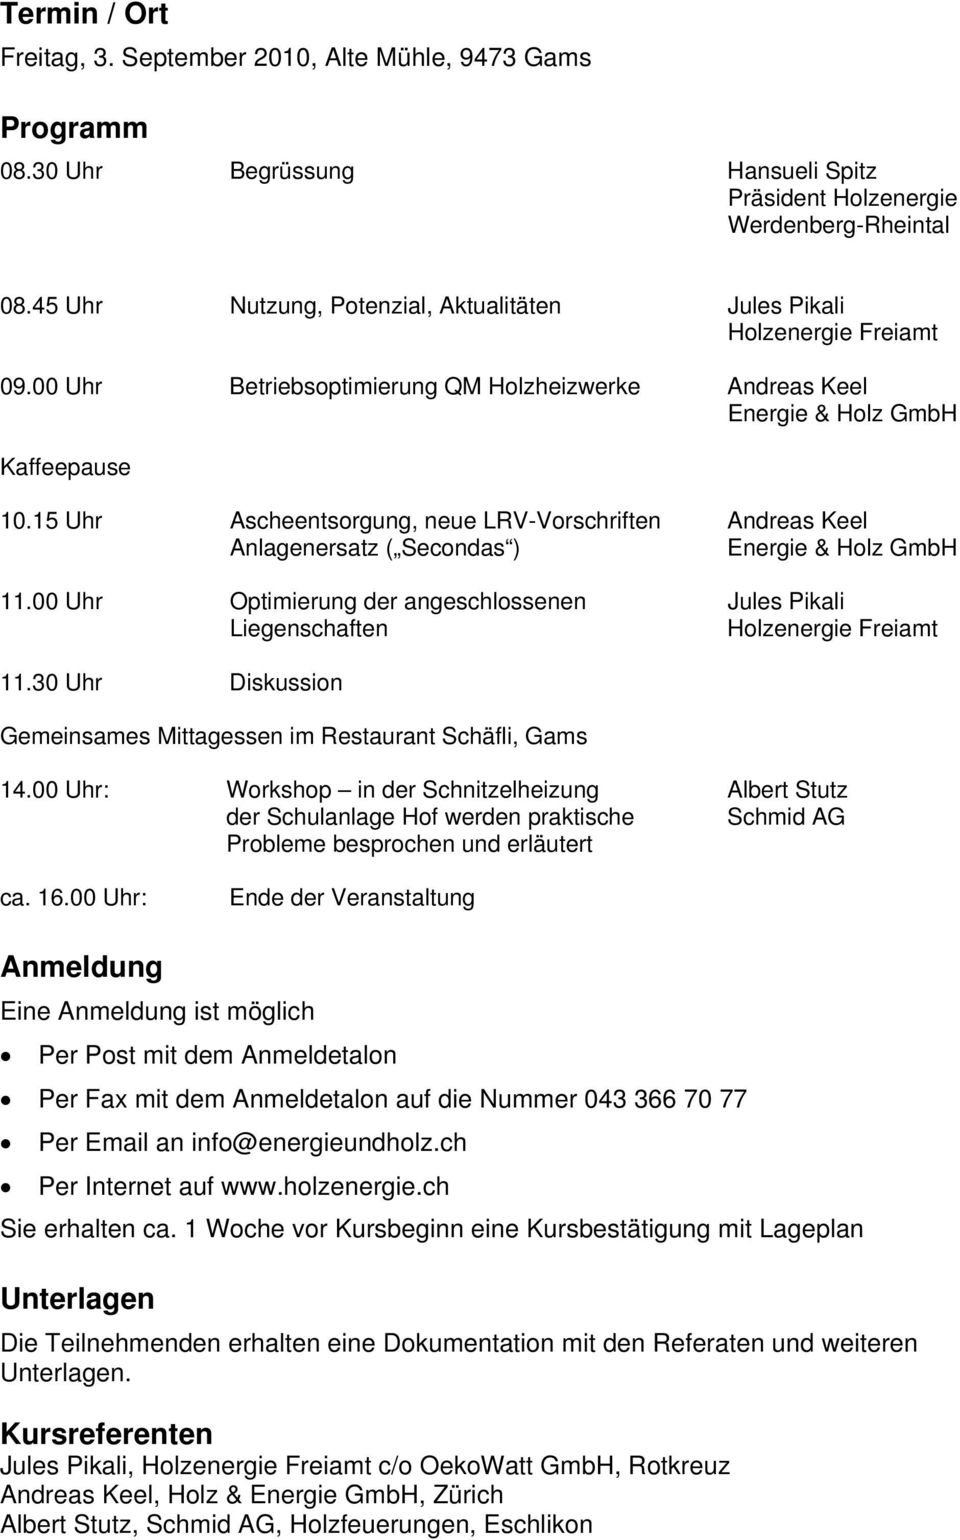 15 Uhr Ascheentsorgung, neue LRV-Vorschriften Andreas Keel Anlagenersatz ( Secondas ) Energie & Holz GmbH 11.00 Uhr Optimierung der angeschlossenen Jules Pikali Liegenschaften Holzenergie Freiamt 11.